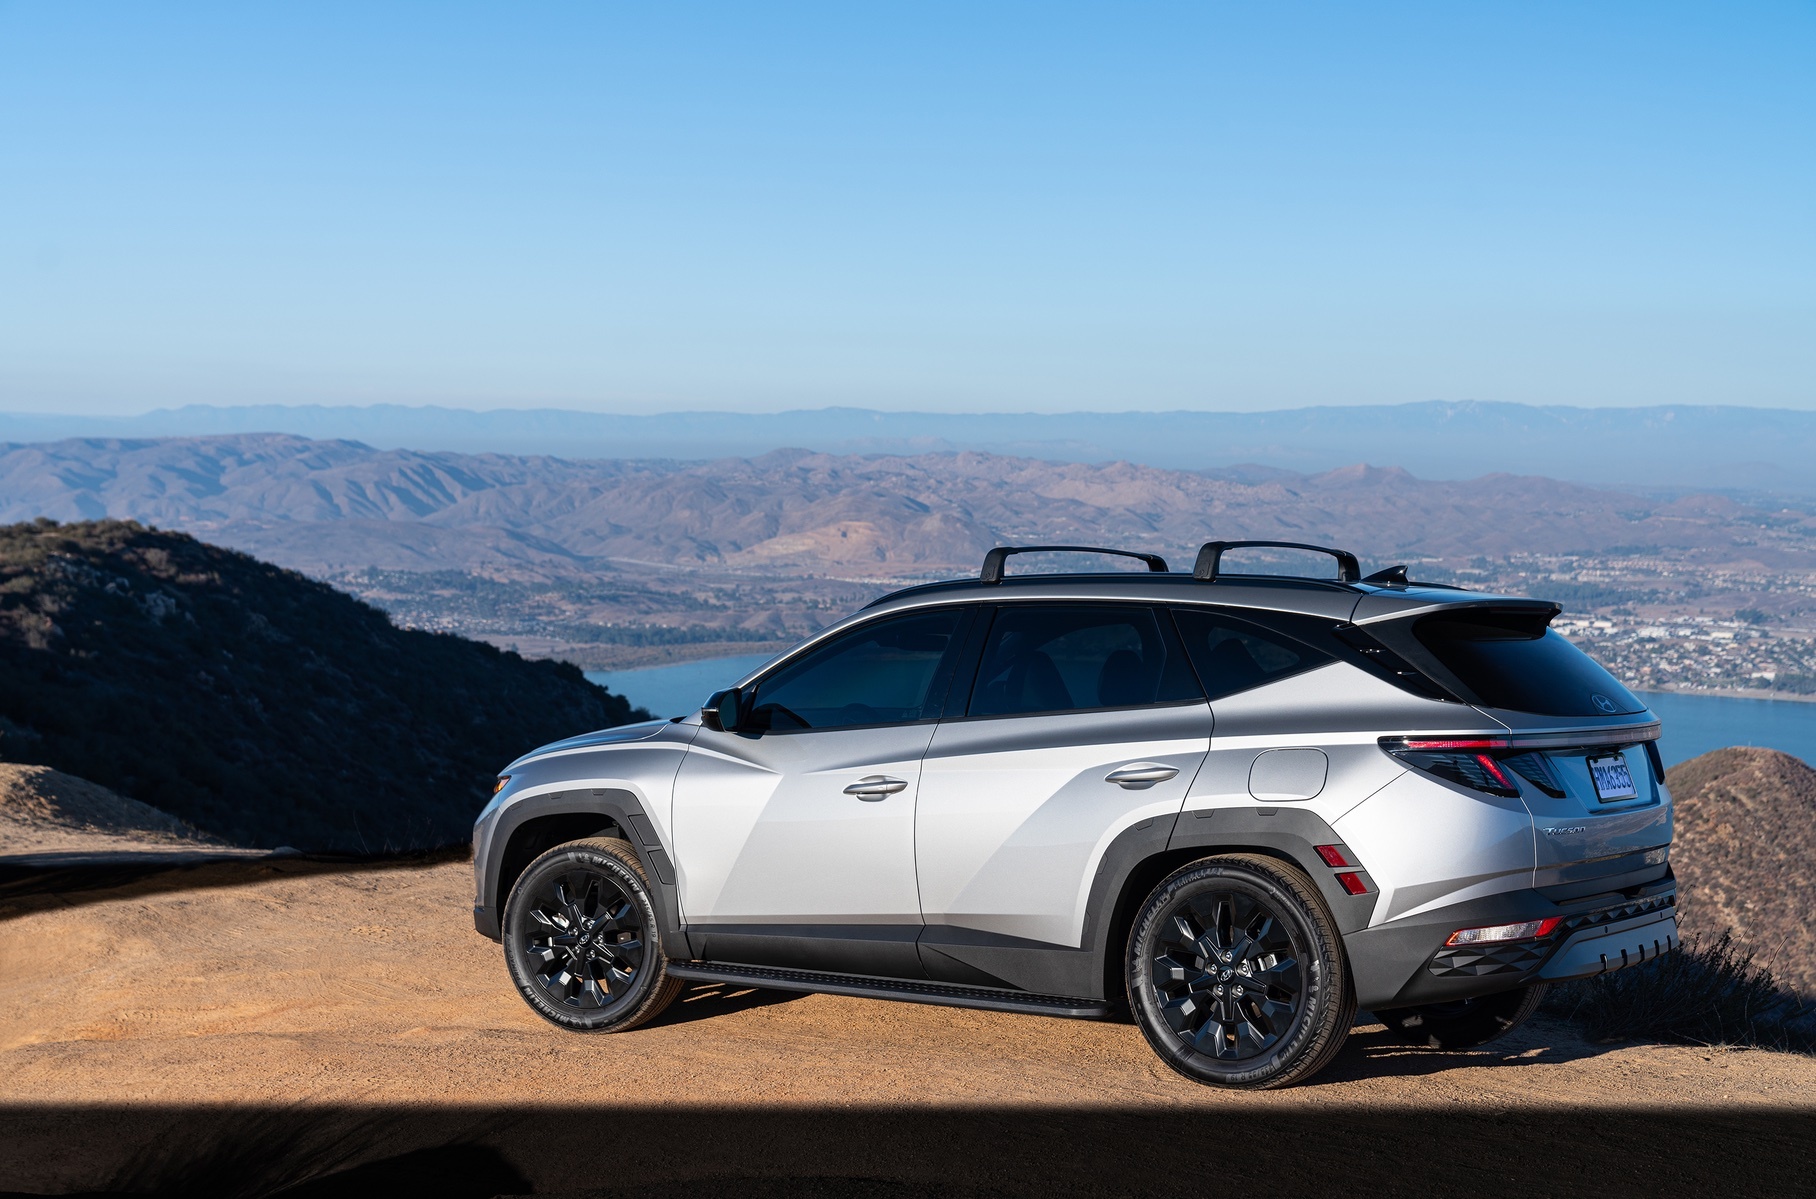 Hyundai Tucson обзавелся «внедорожной» версией XRT